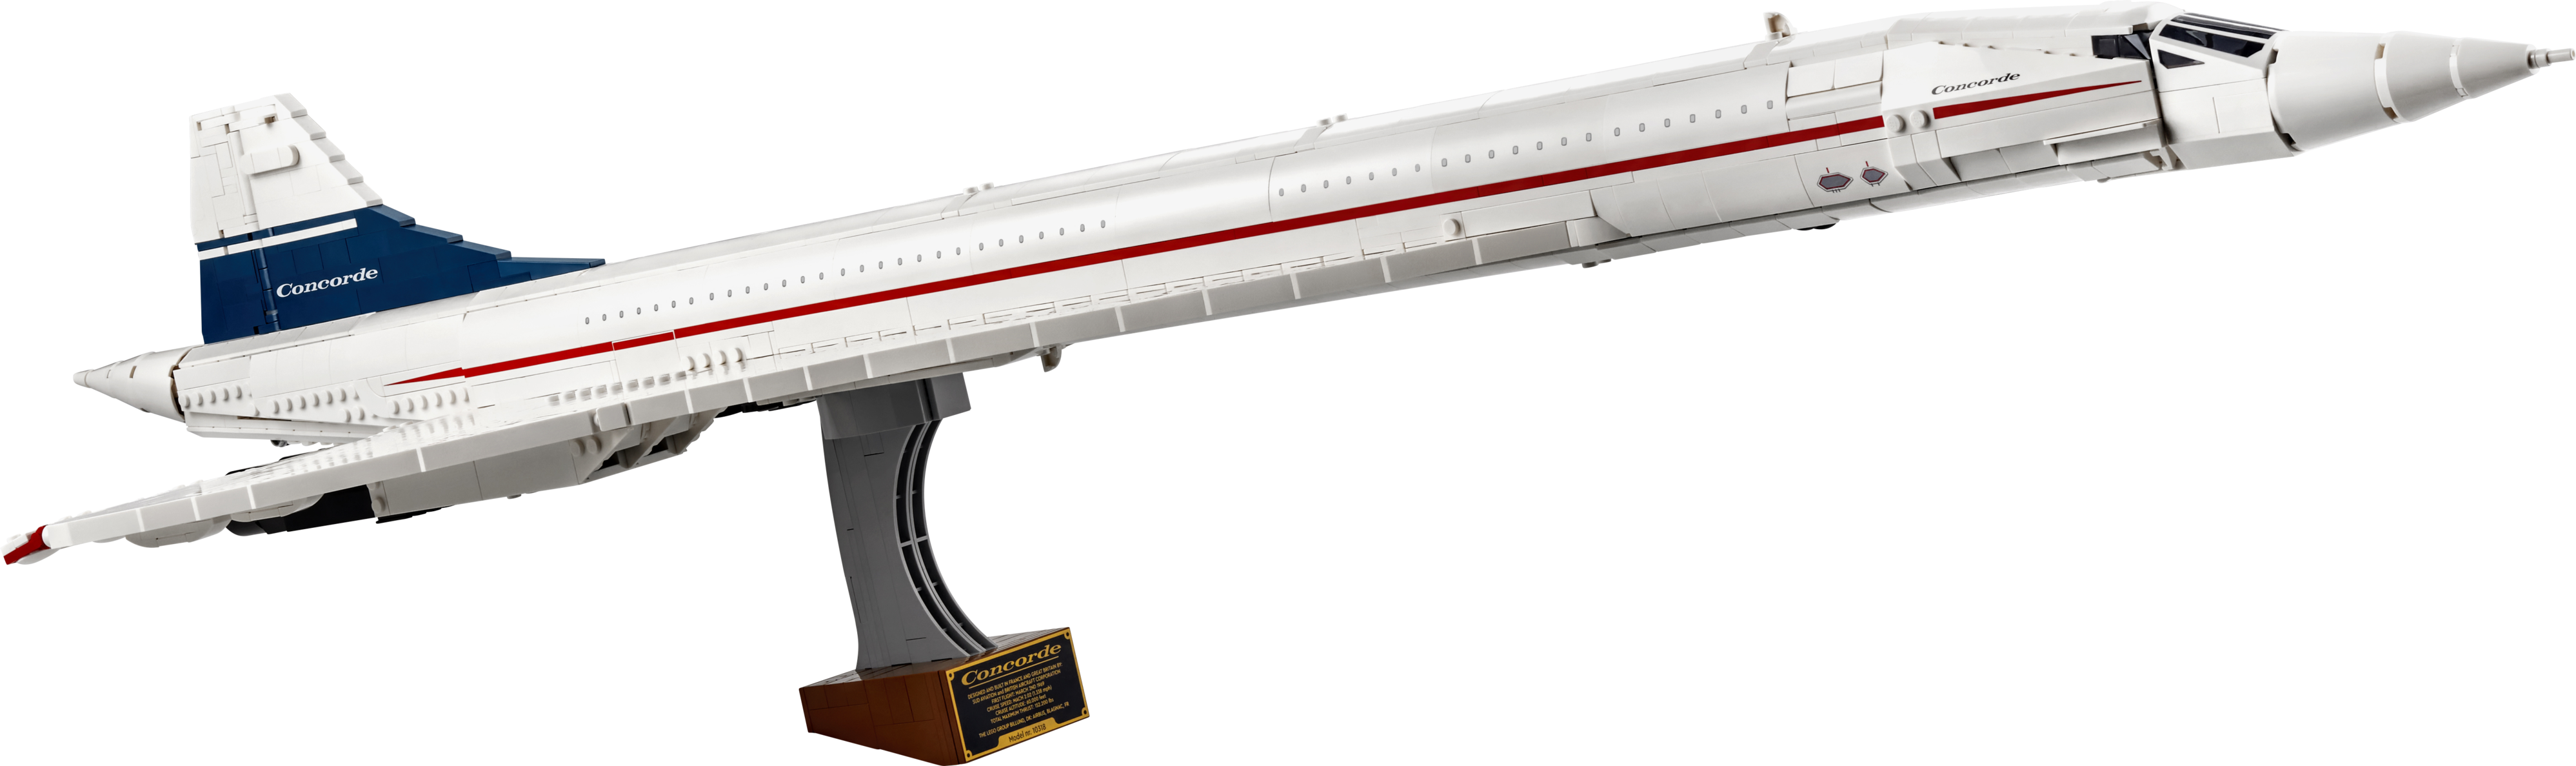 Tilbud: Concorde kr 2399,9 på Lego